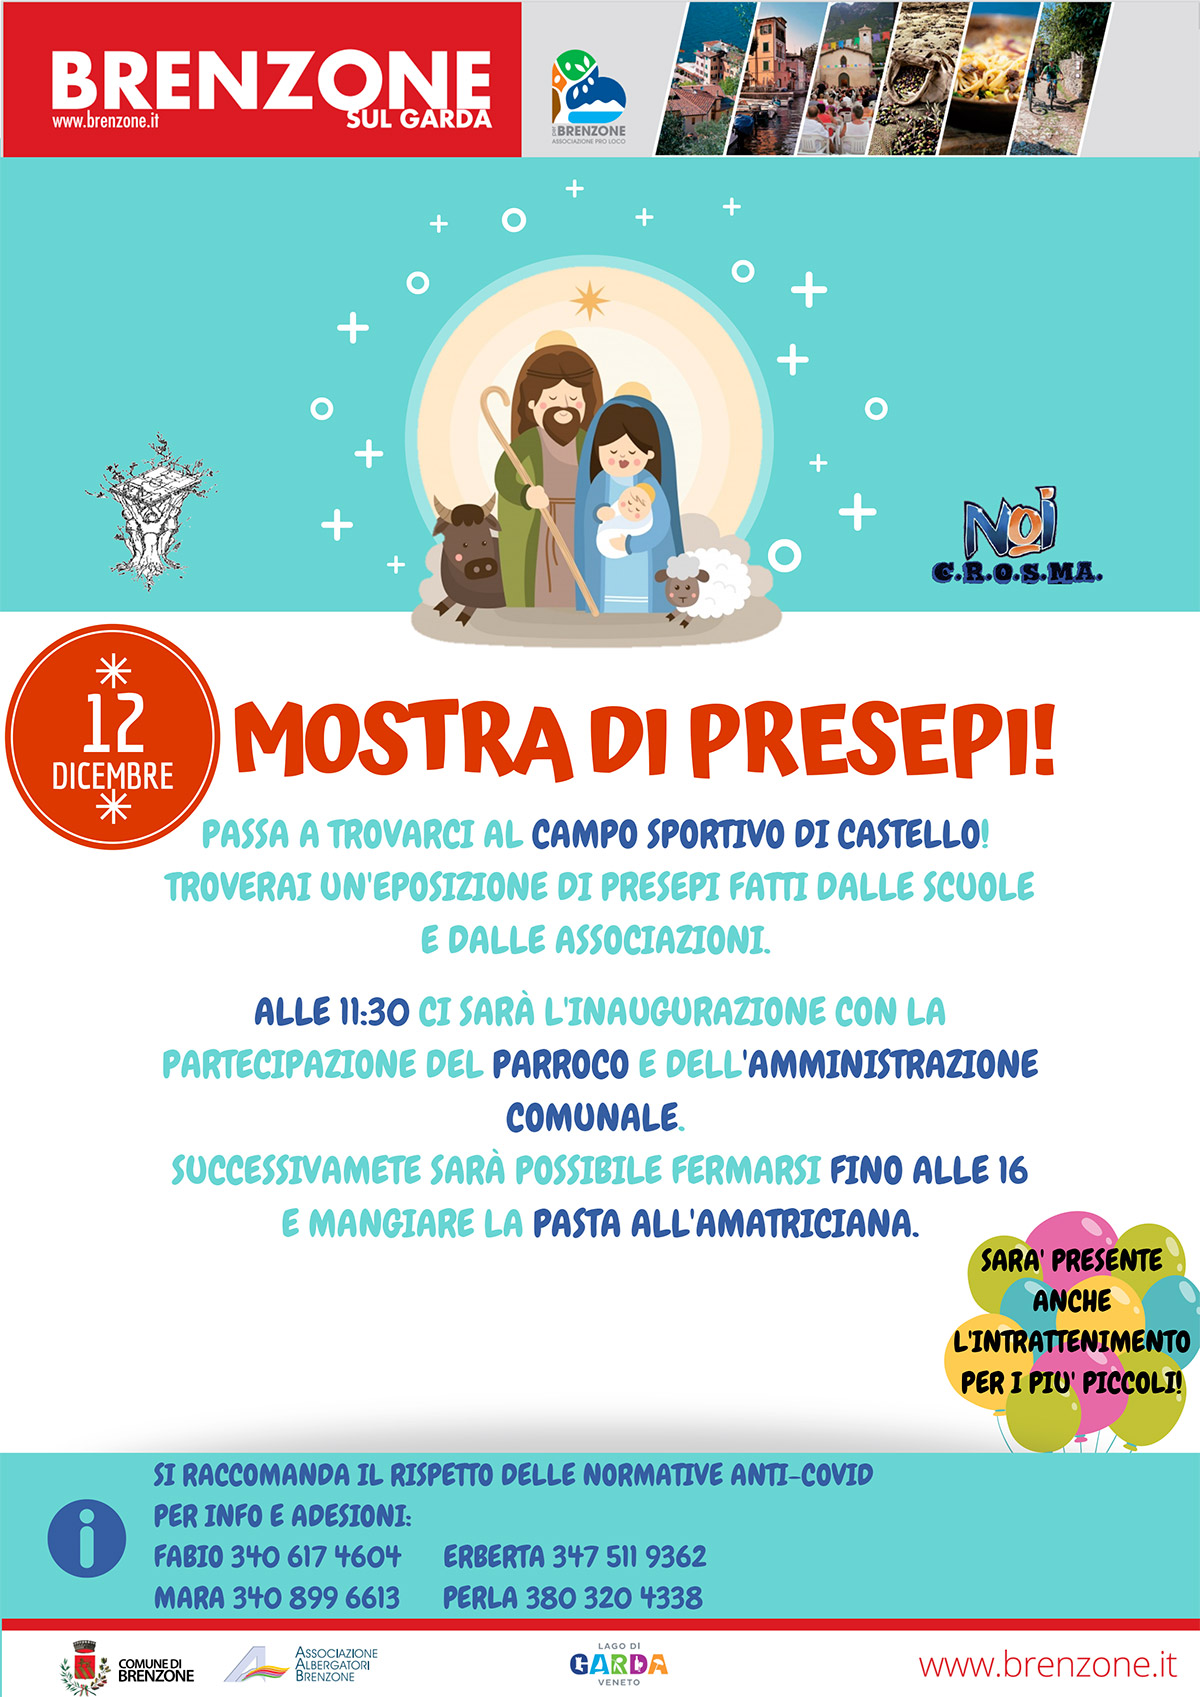 Brenzone sul Garda: Mostra di presepi - Krippenausstellung - Nativity scene exhibition